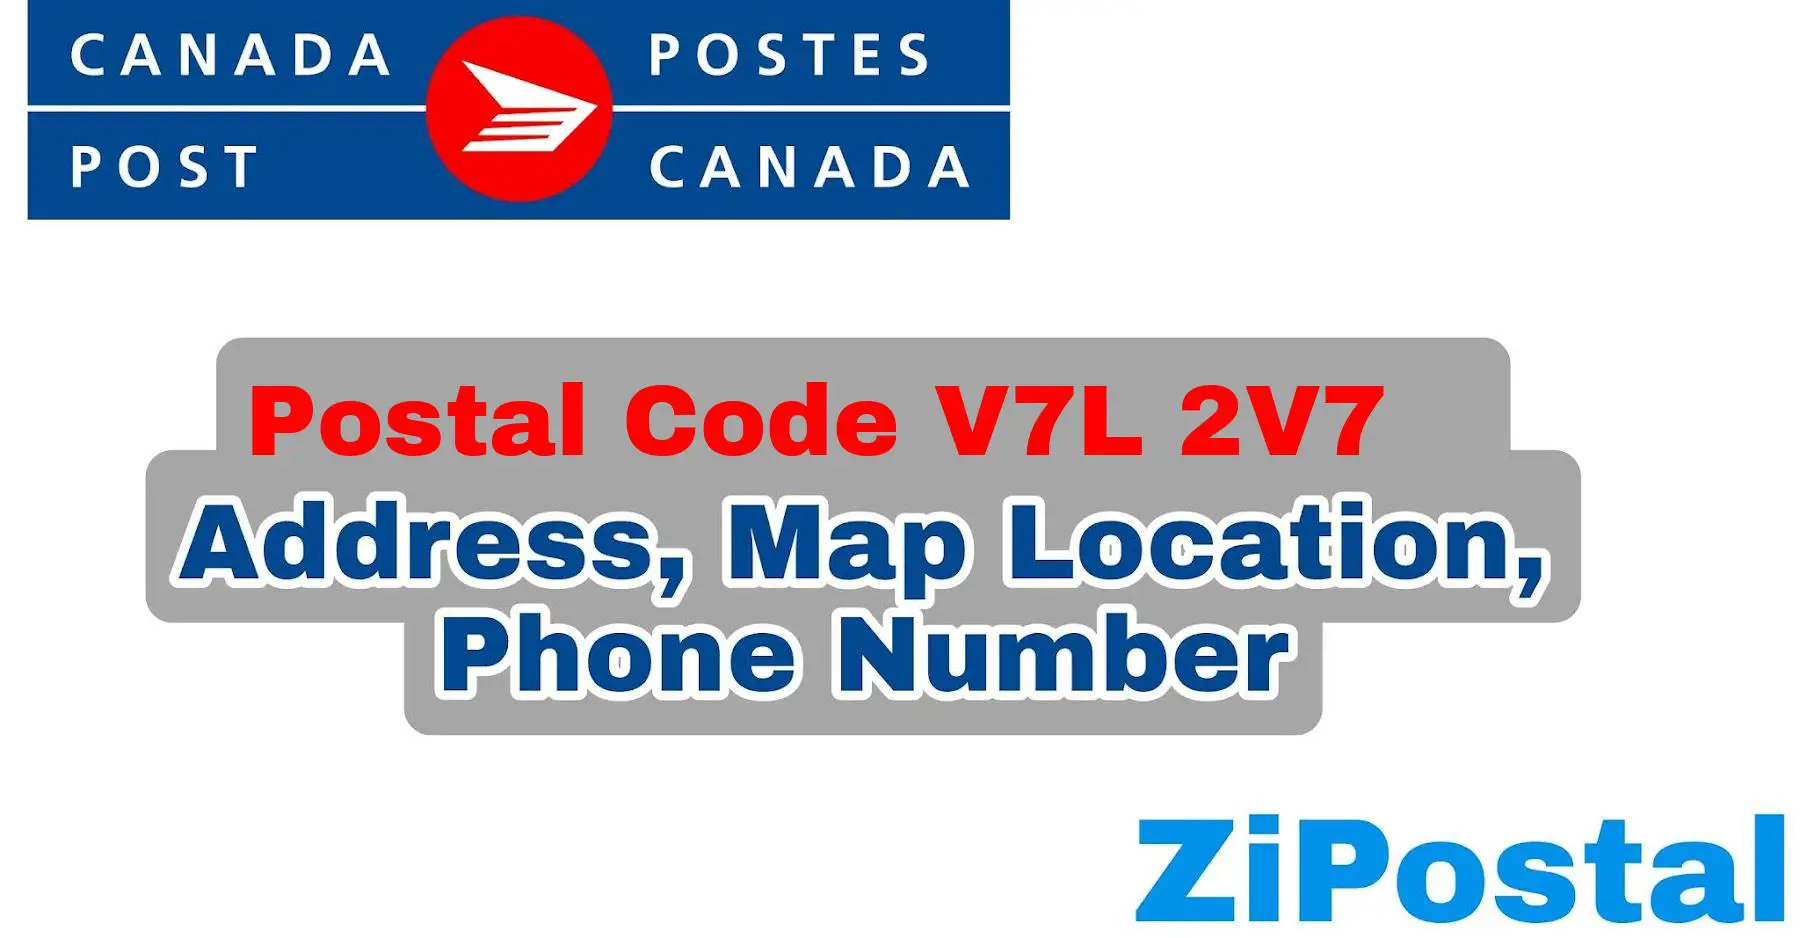 Postal Code V7L 2V7 Address Map Location and Phone Number